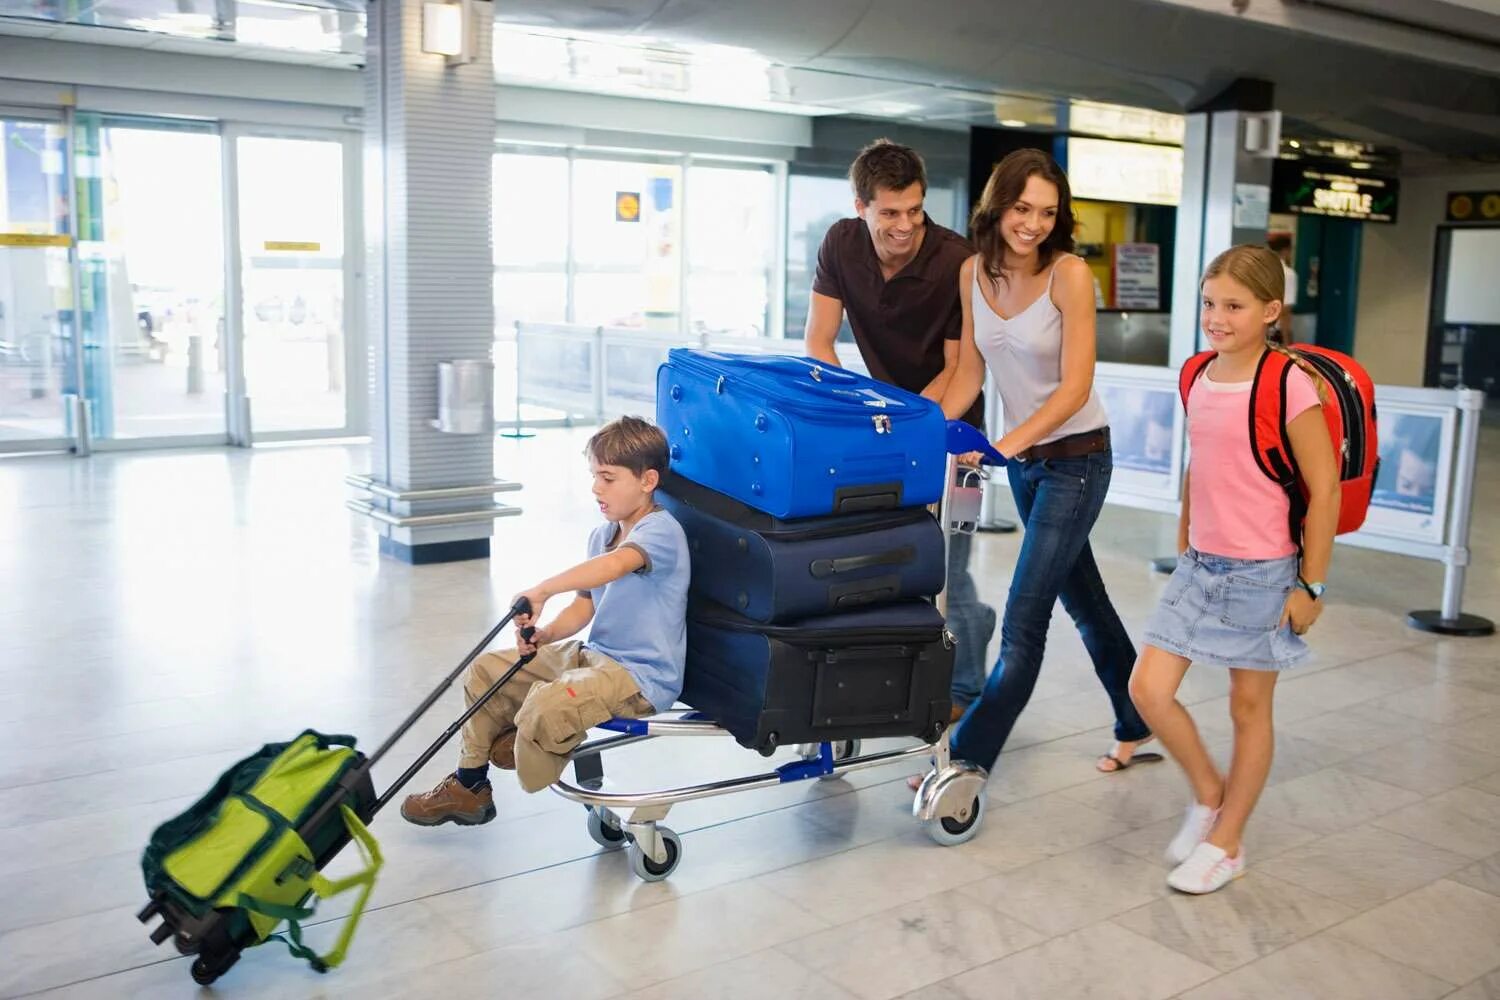 Чемодан в аэропорту. Семья с чемоданами в аэропорту. Тележка с чемоданами в аэропорту. Человек с чемоданом и ребенок. На год заграницу